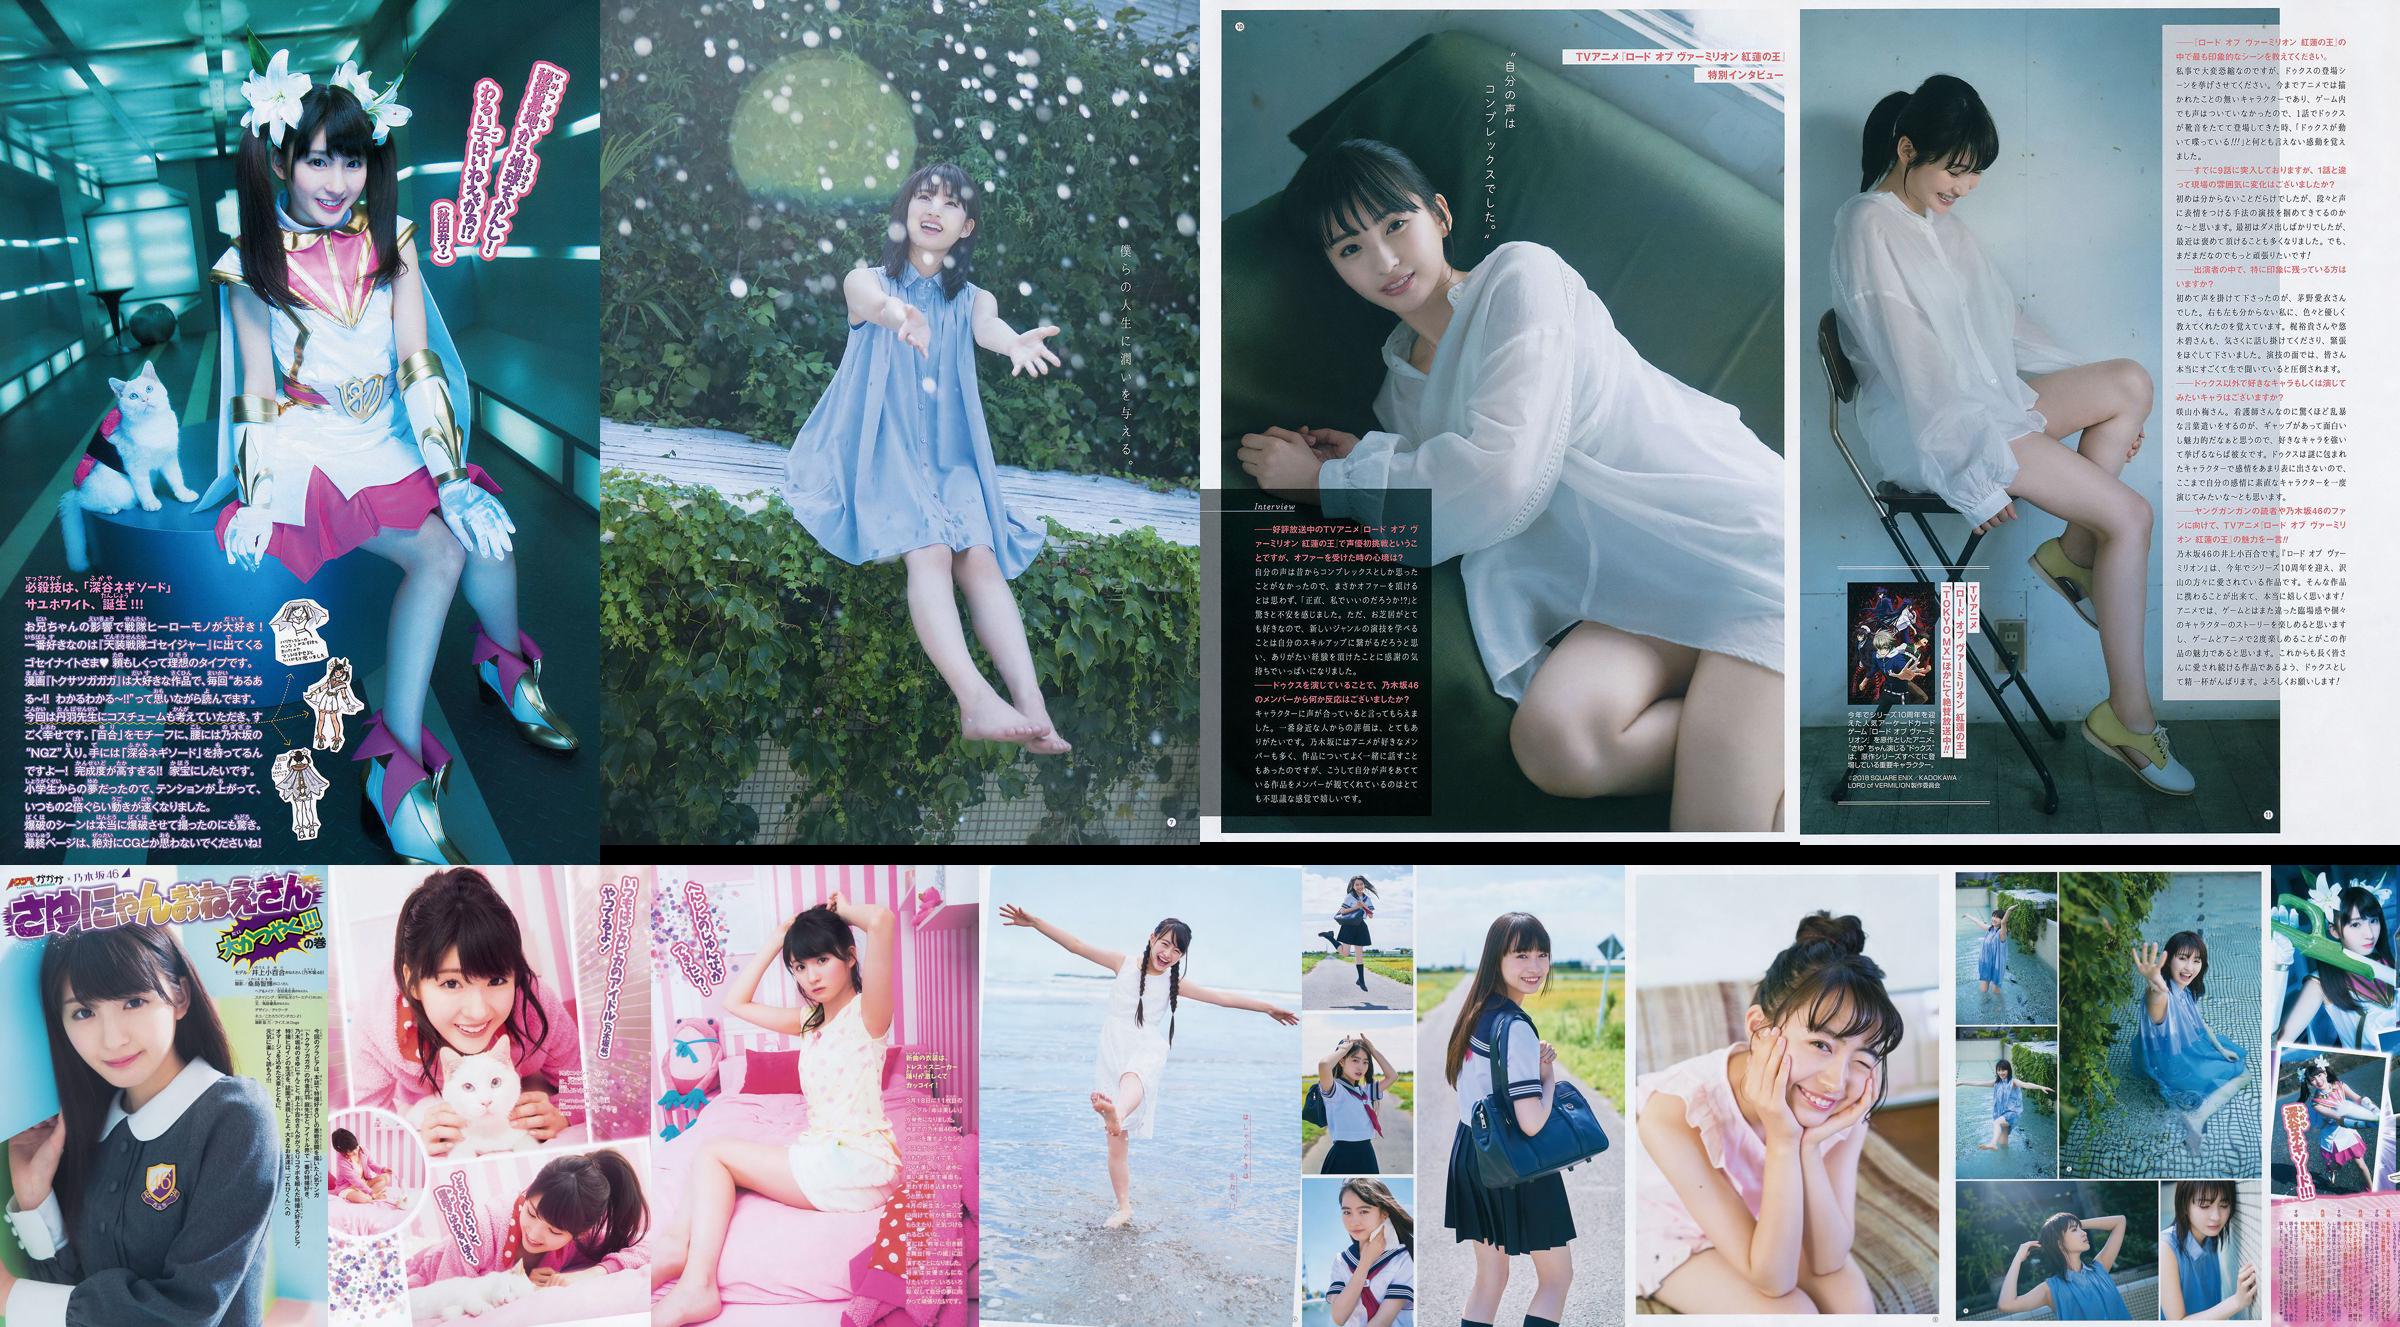 [Young Gangan] Sayuri Inoue It's original sand 2018 No.18 Photo Magazine No.1e9e63 หน้า 6